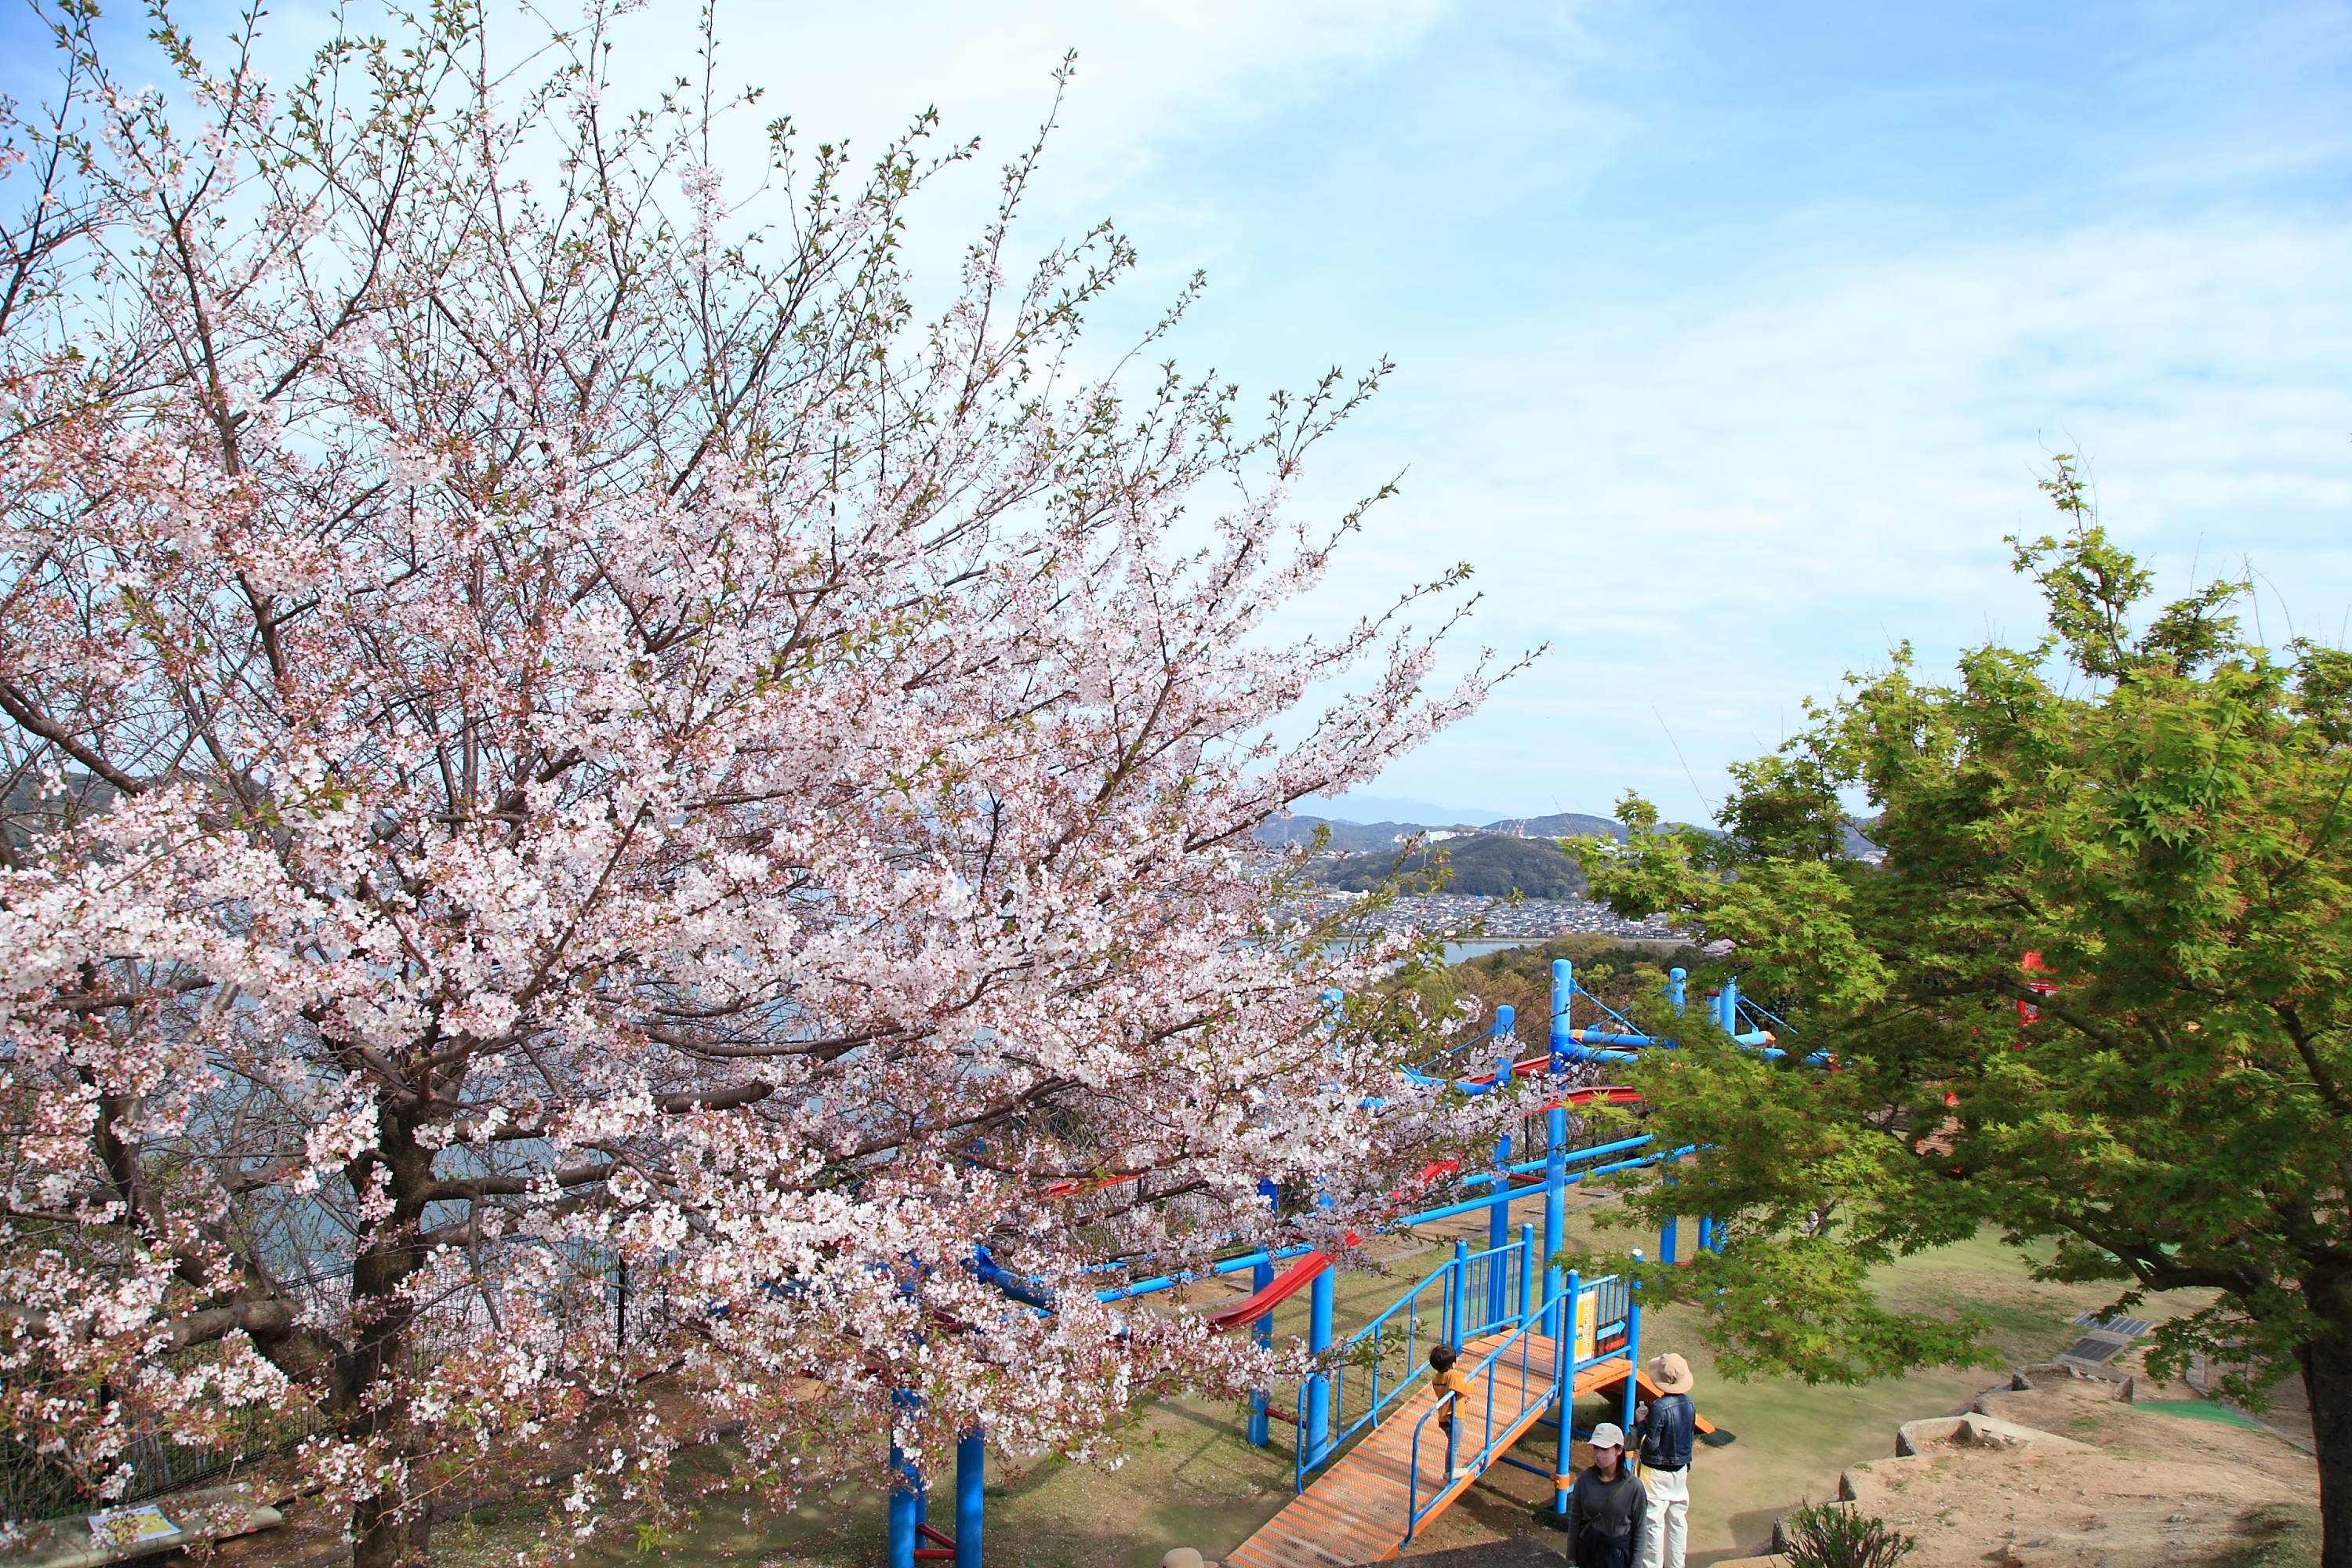 のぞみ公園の桜と遊具